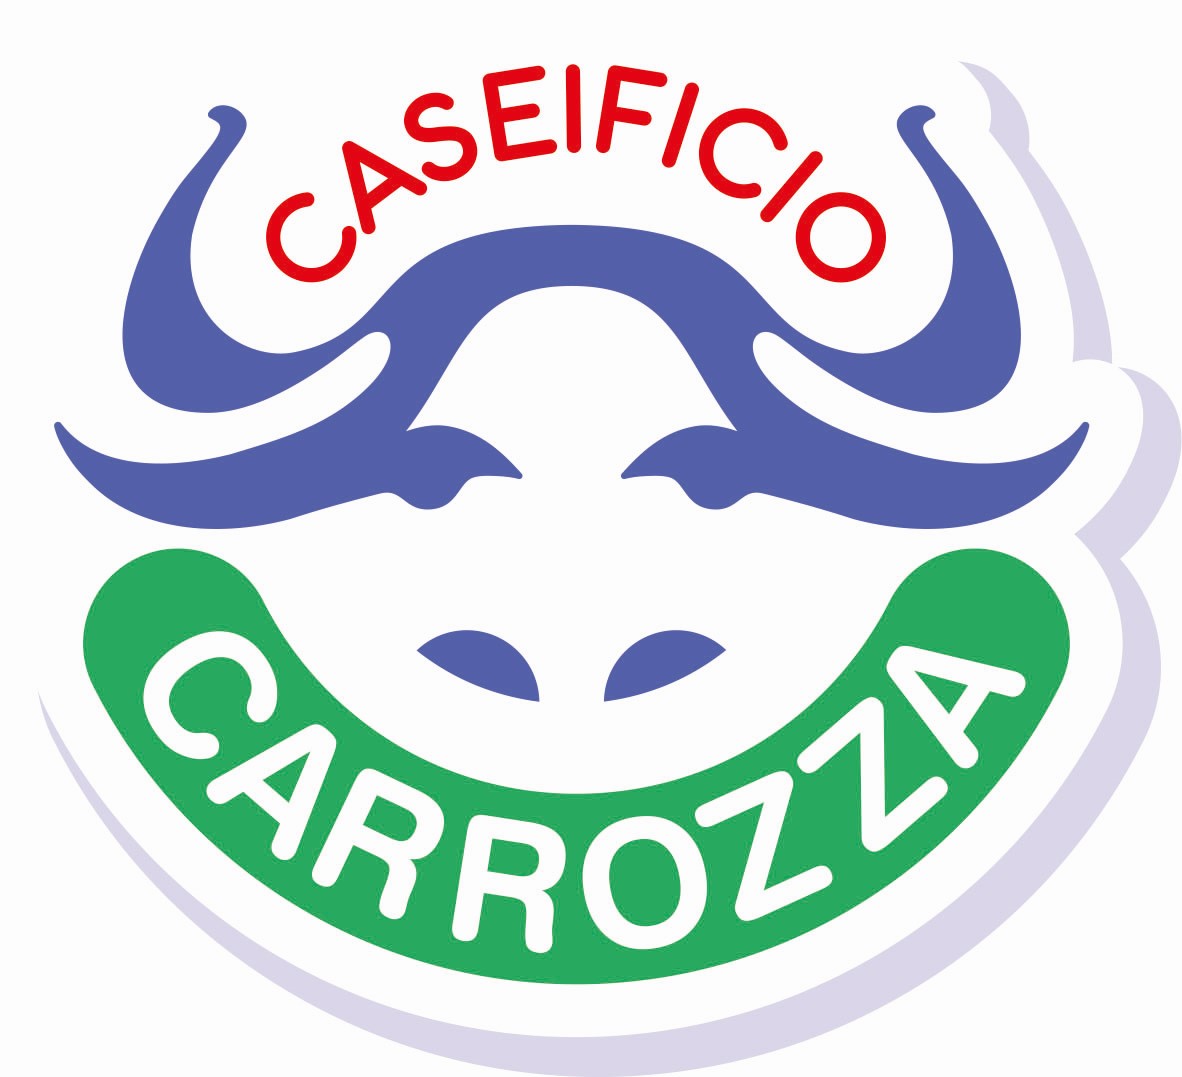 Caseificio Carrozza